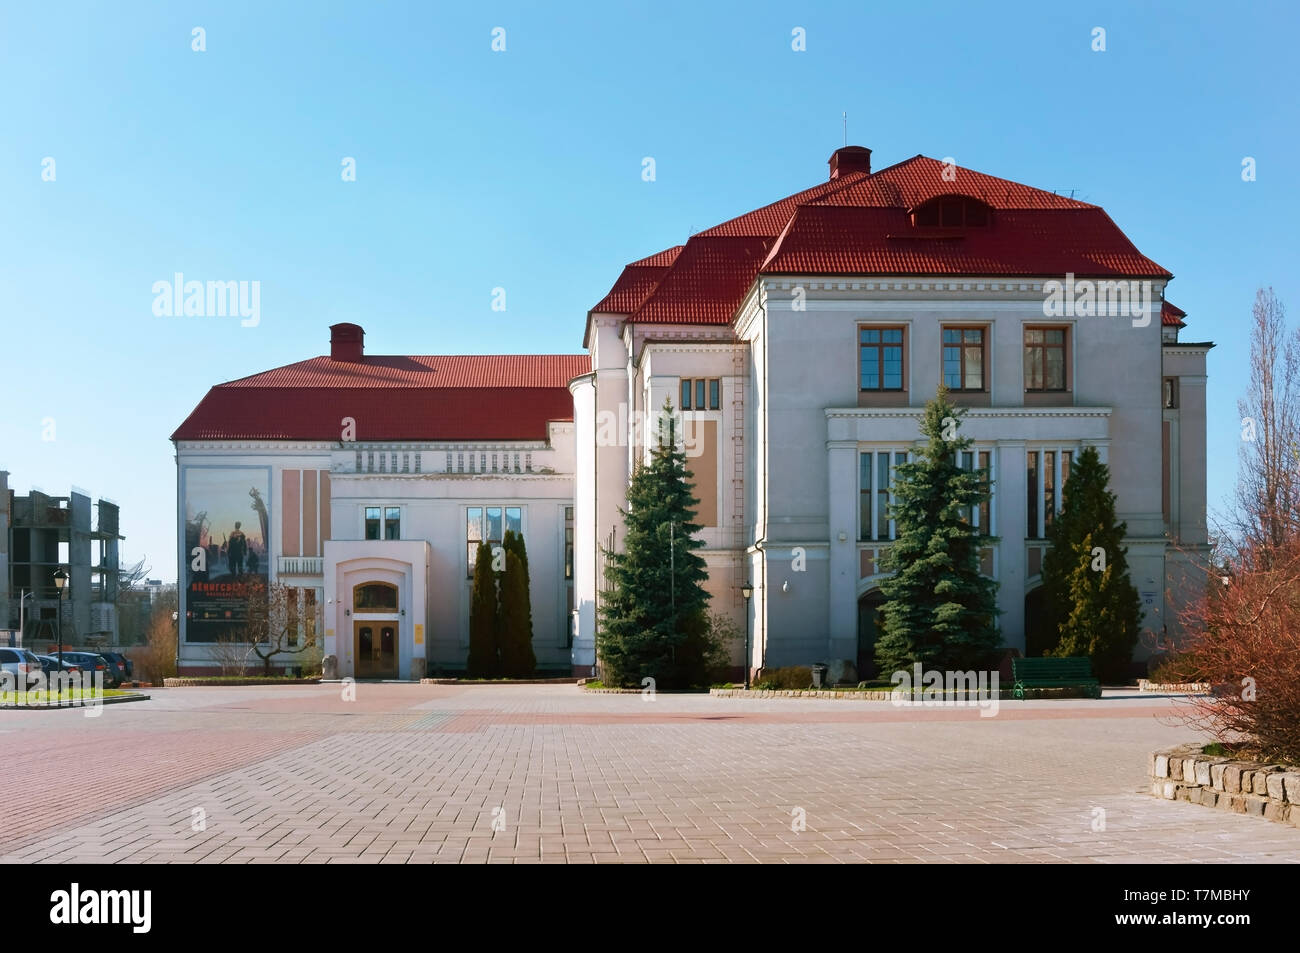 L'historique régional de Kaliningrad et Art Museum, Musée d'histoire locale, de la Russie, Kaliningrad, Klinicheskaya str., 21, 13 Avr 2019 Banque D'Images